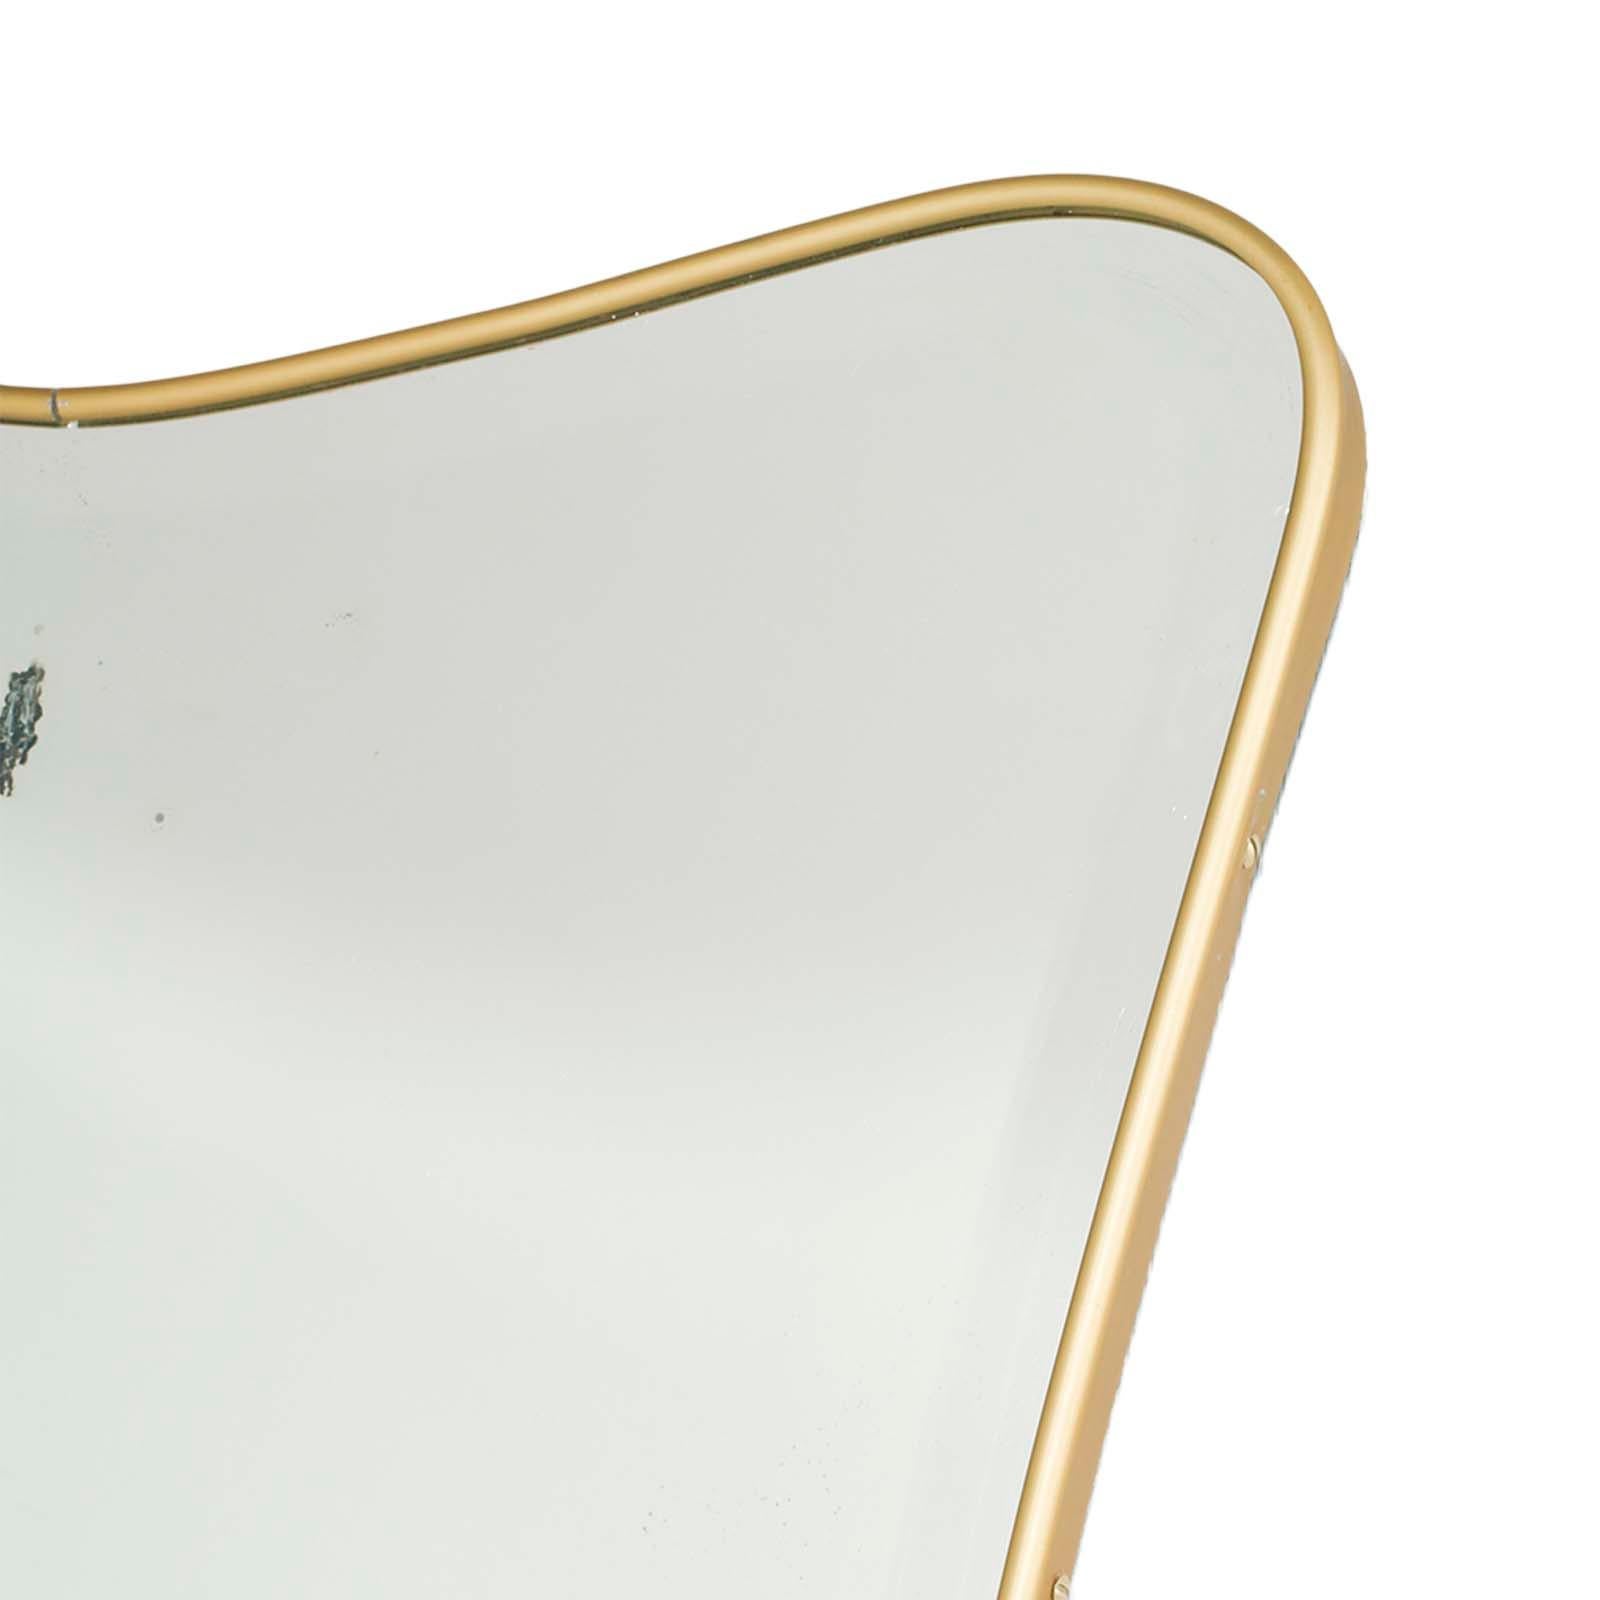 Klassischer, Gio Ponti zugeschriebener Spiegel, hergestellt von Fontana Arte in den 1940er Jahren, mit abgeschrägtem Spiegel und vergoldetem Metallrahmen.

Der Spiegel hat eine Unvollkommenheit in der Versilberung, die durch den hinteren